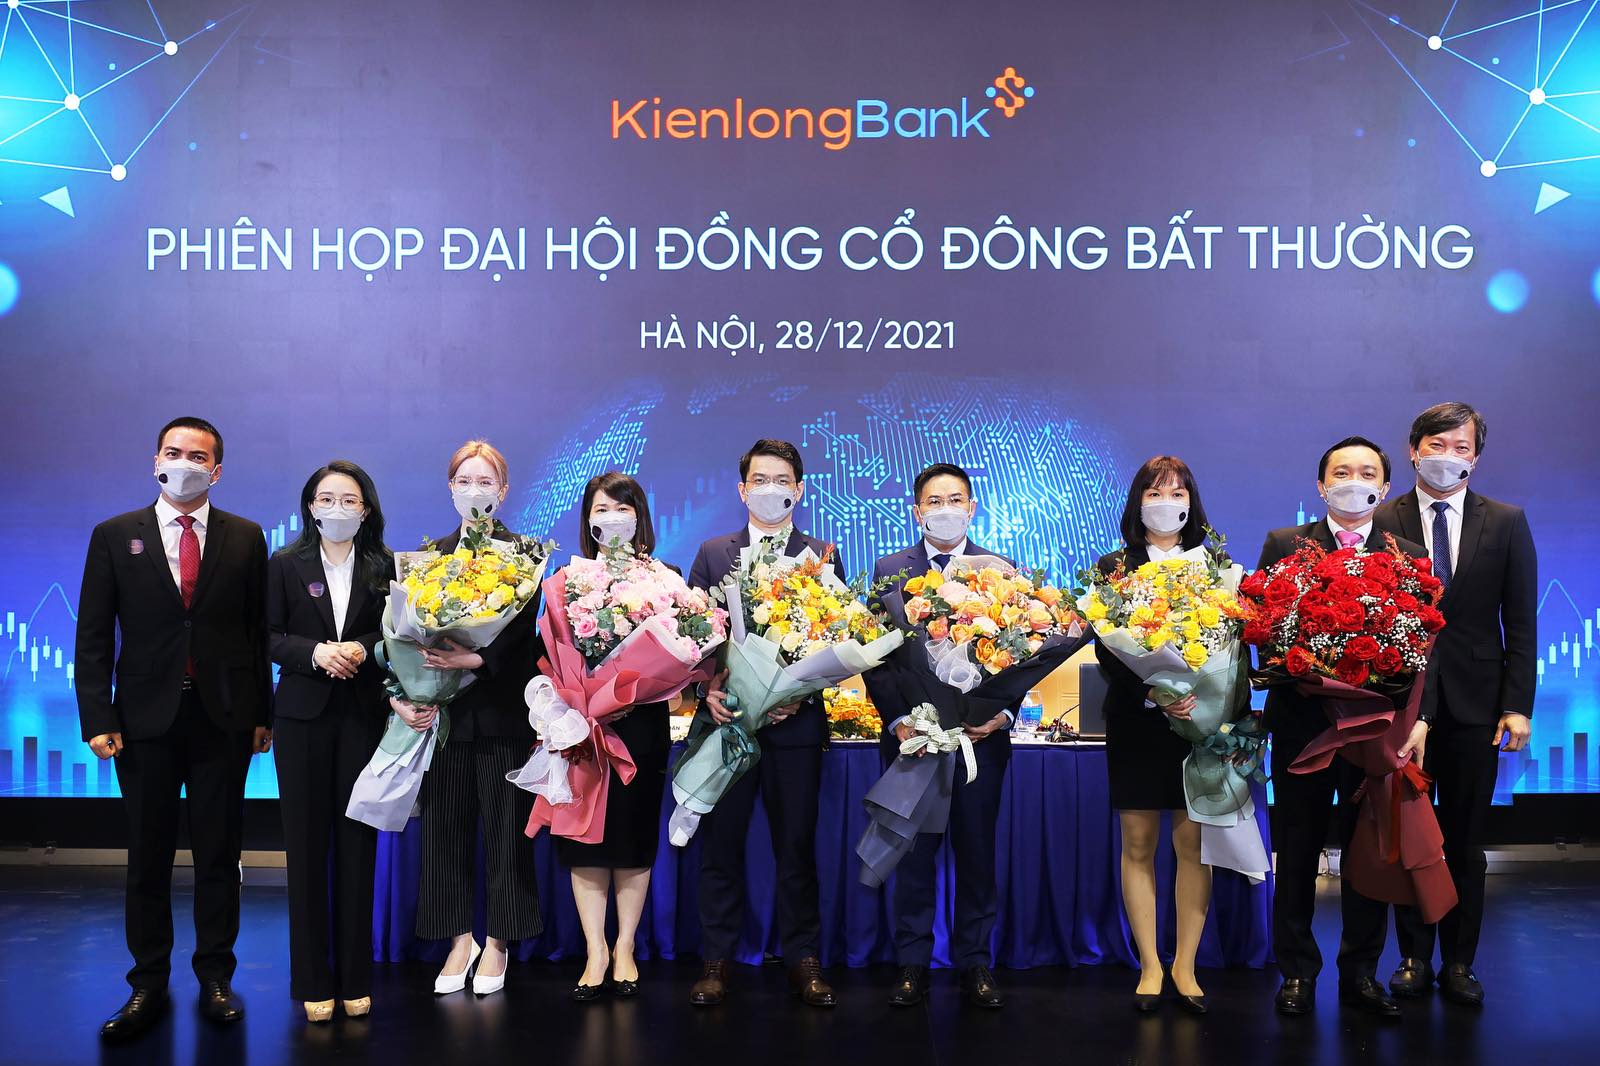 KienlongBank tổ chức ĐHĐCĐ bất thường, chuẩn bị niêm yết cổ phiếu lên sàn chứng khoán - Ảnh 3.